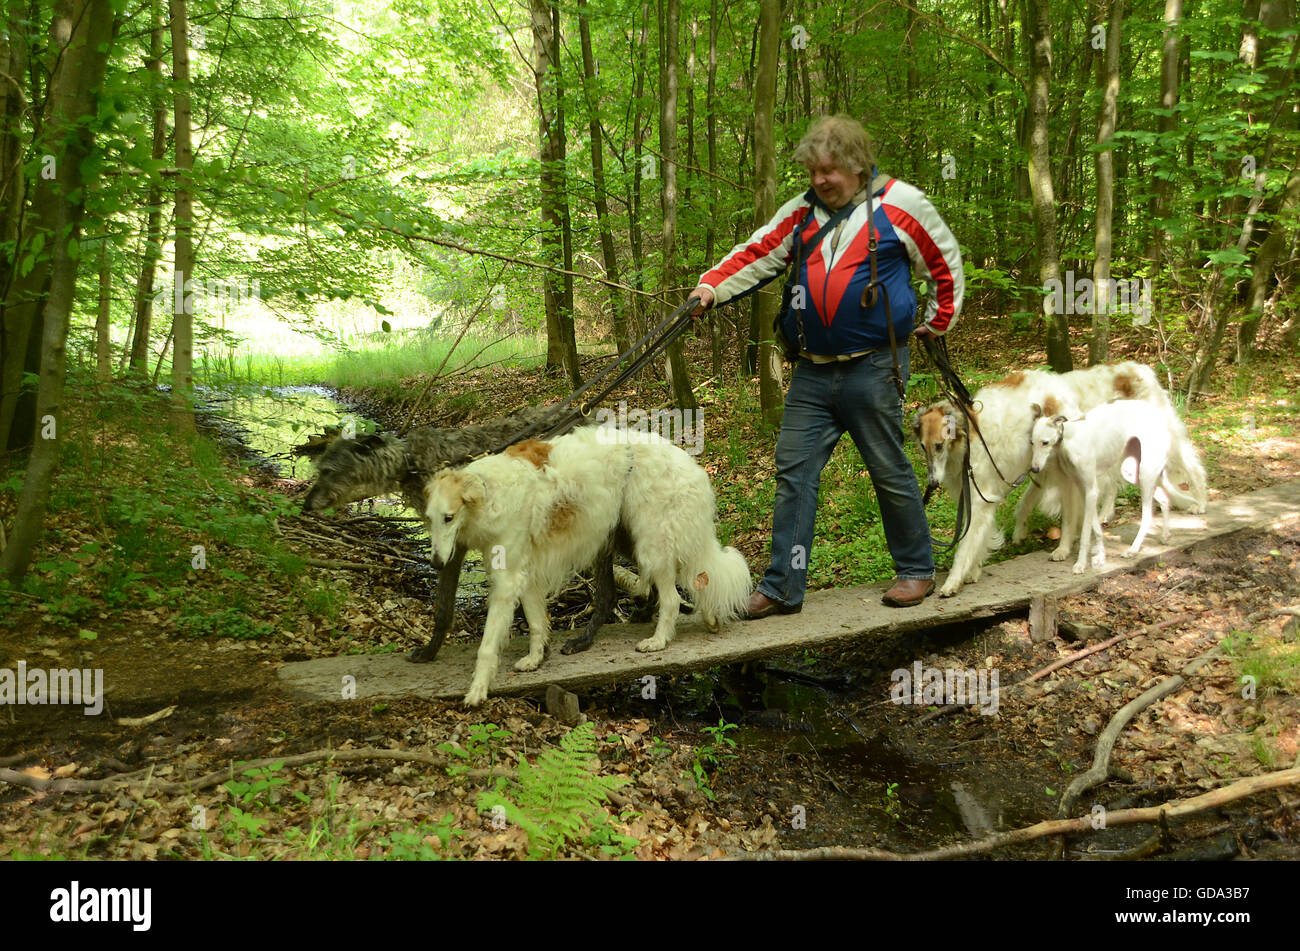 Persona con 5 perros cruza un pequeño puente sobre un arroyo. El puente va a gestionar la enorme carga? Foto de stock